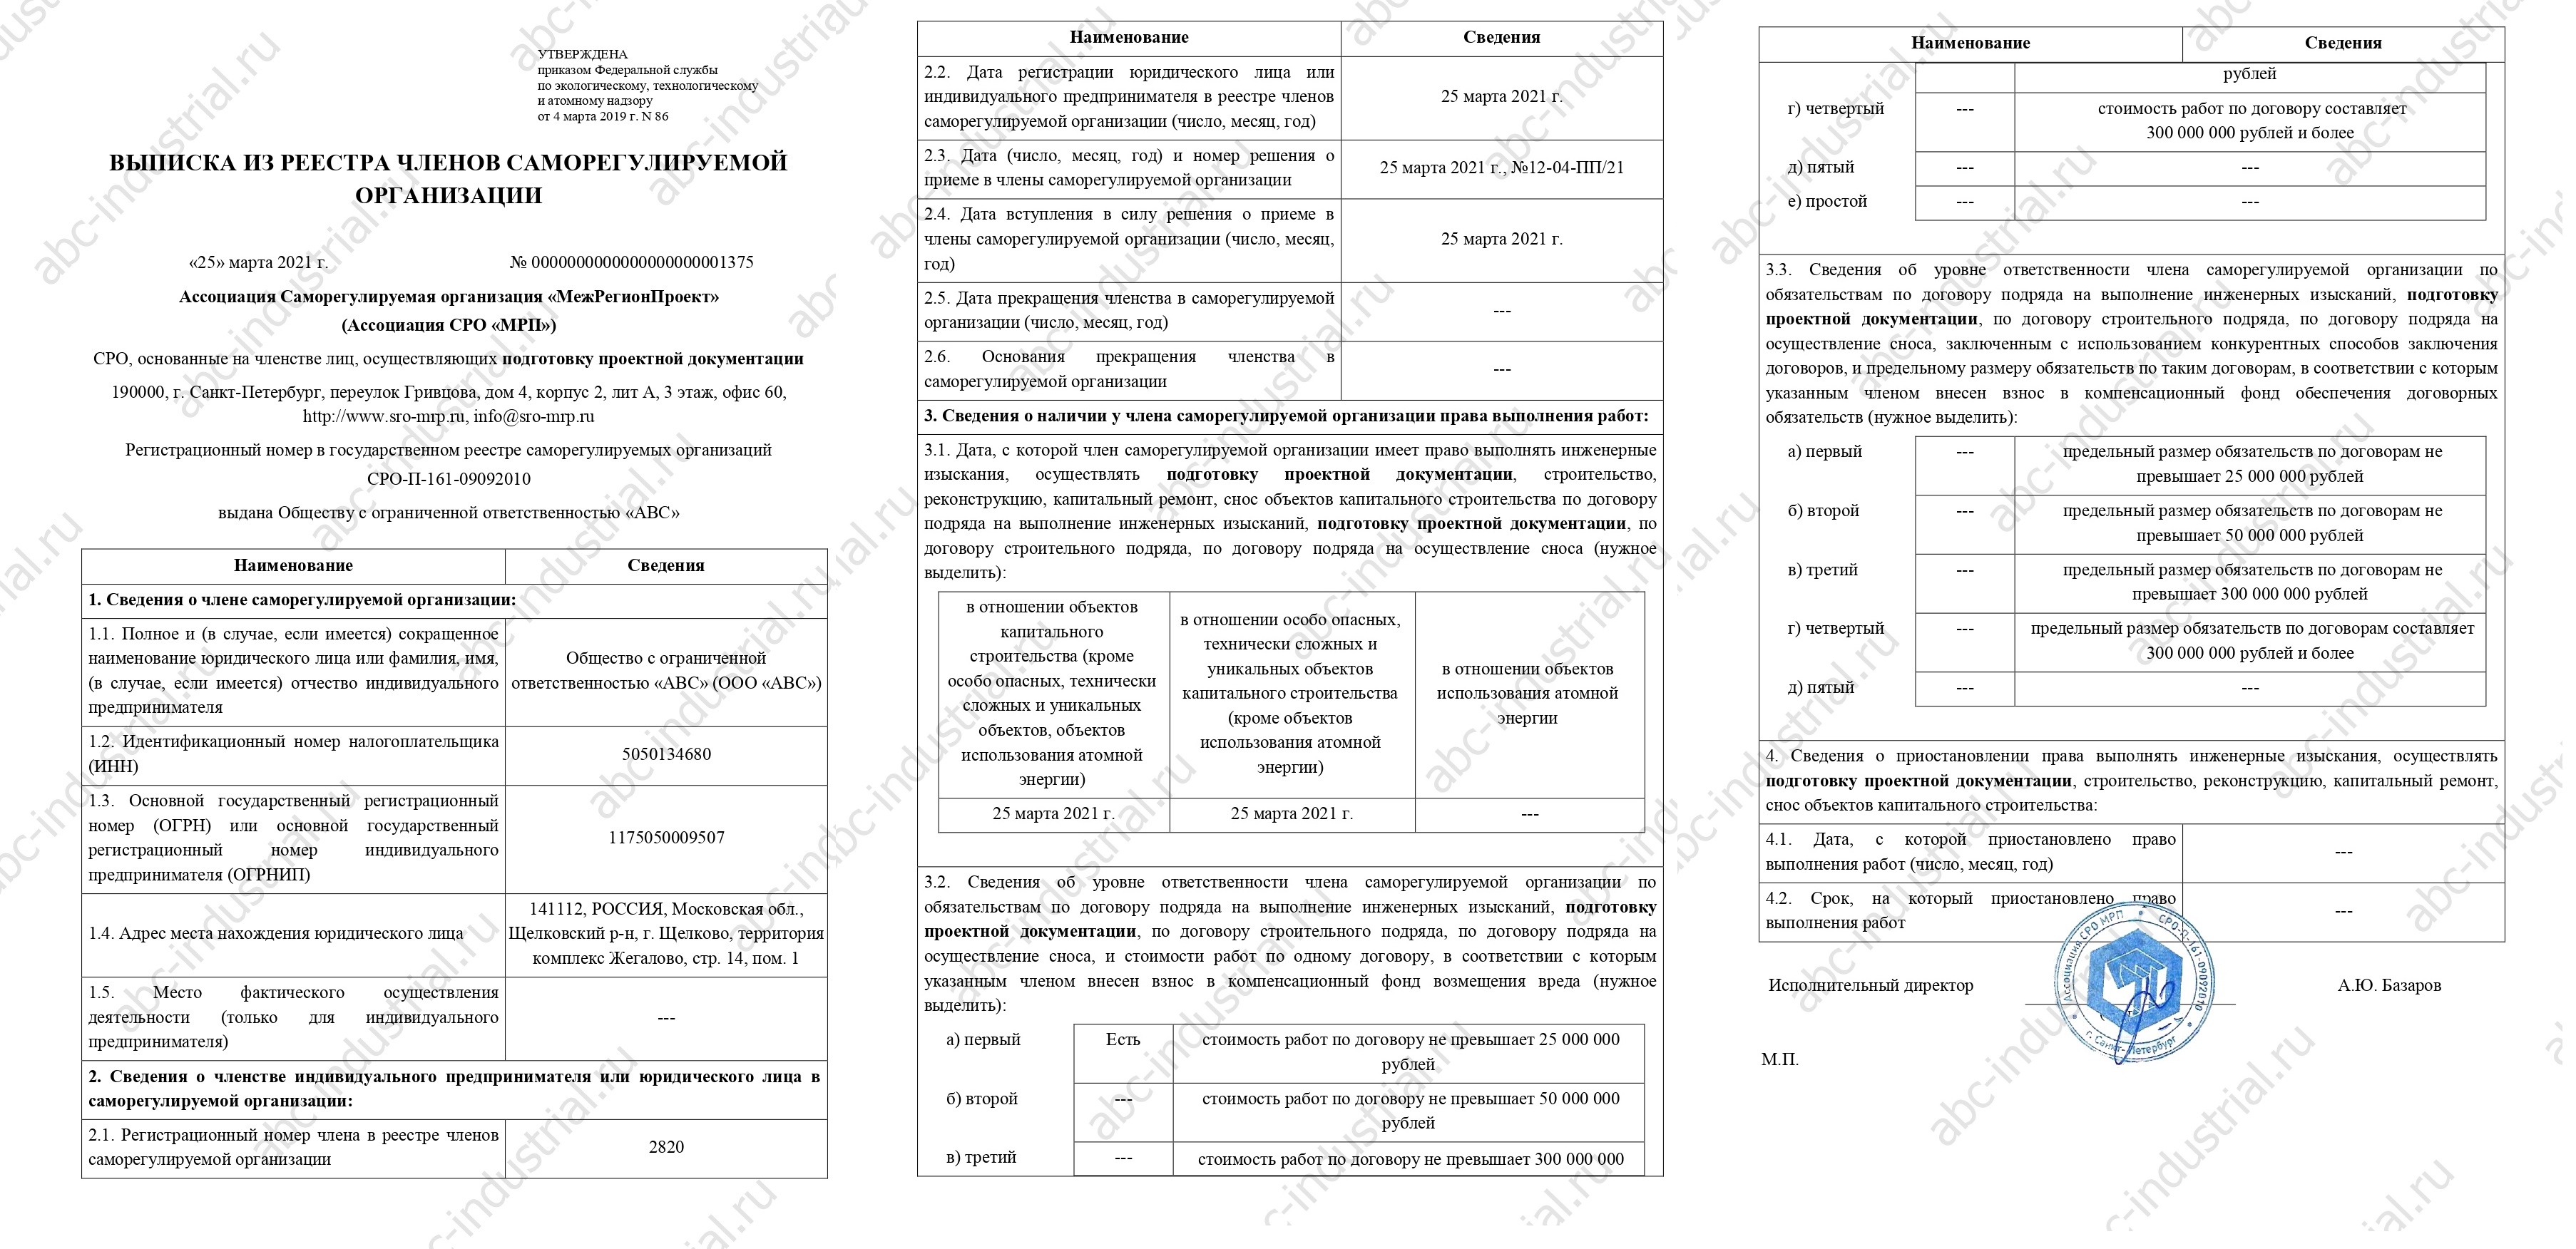 Выписка из реестра членов СРО (подготовка проектной документации)